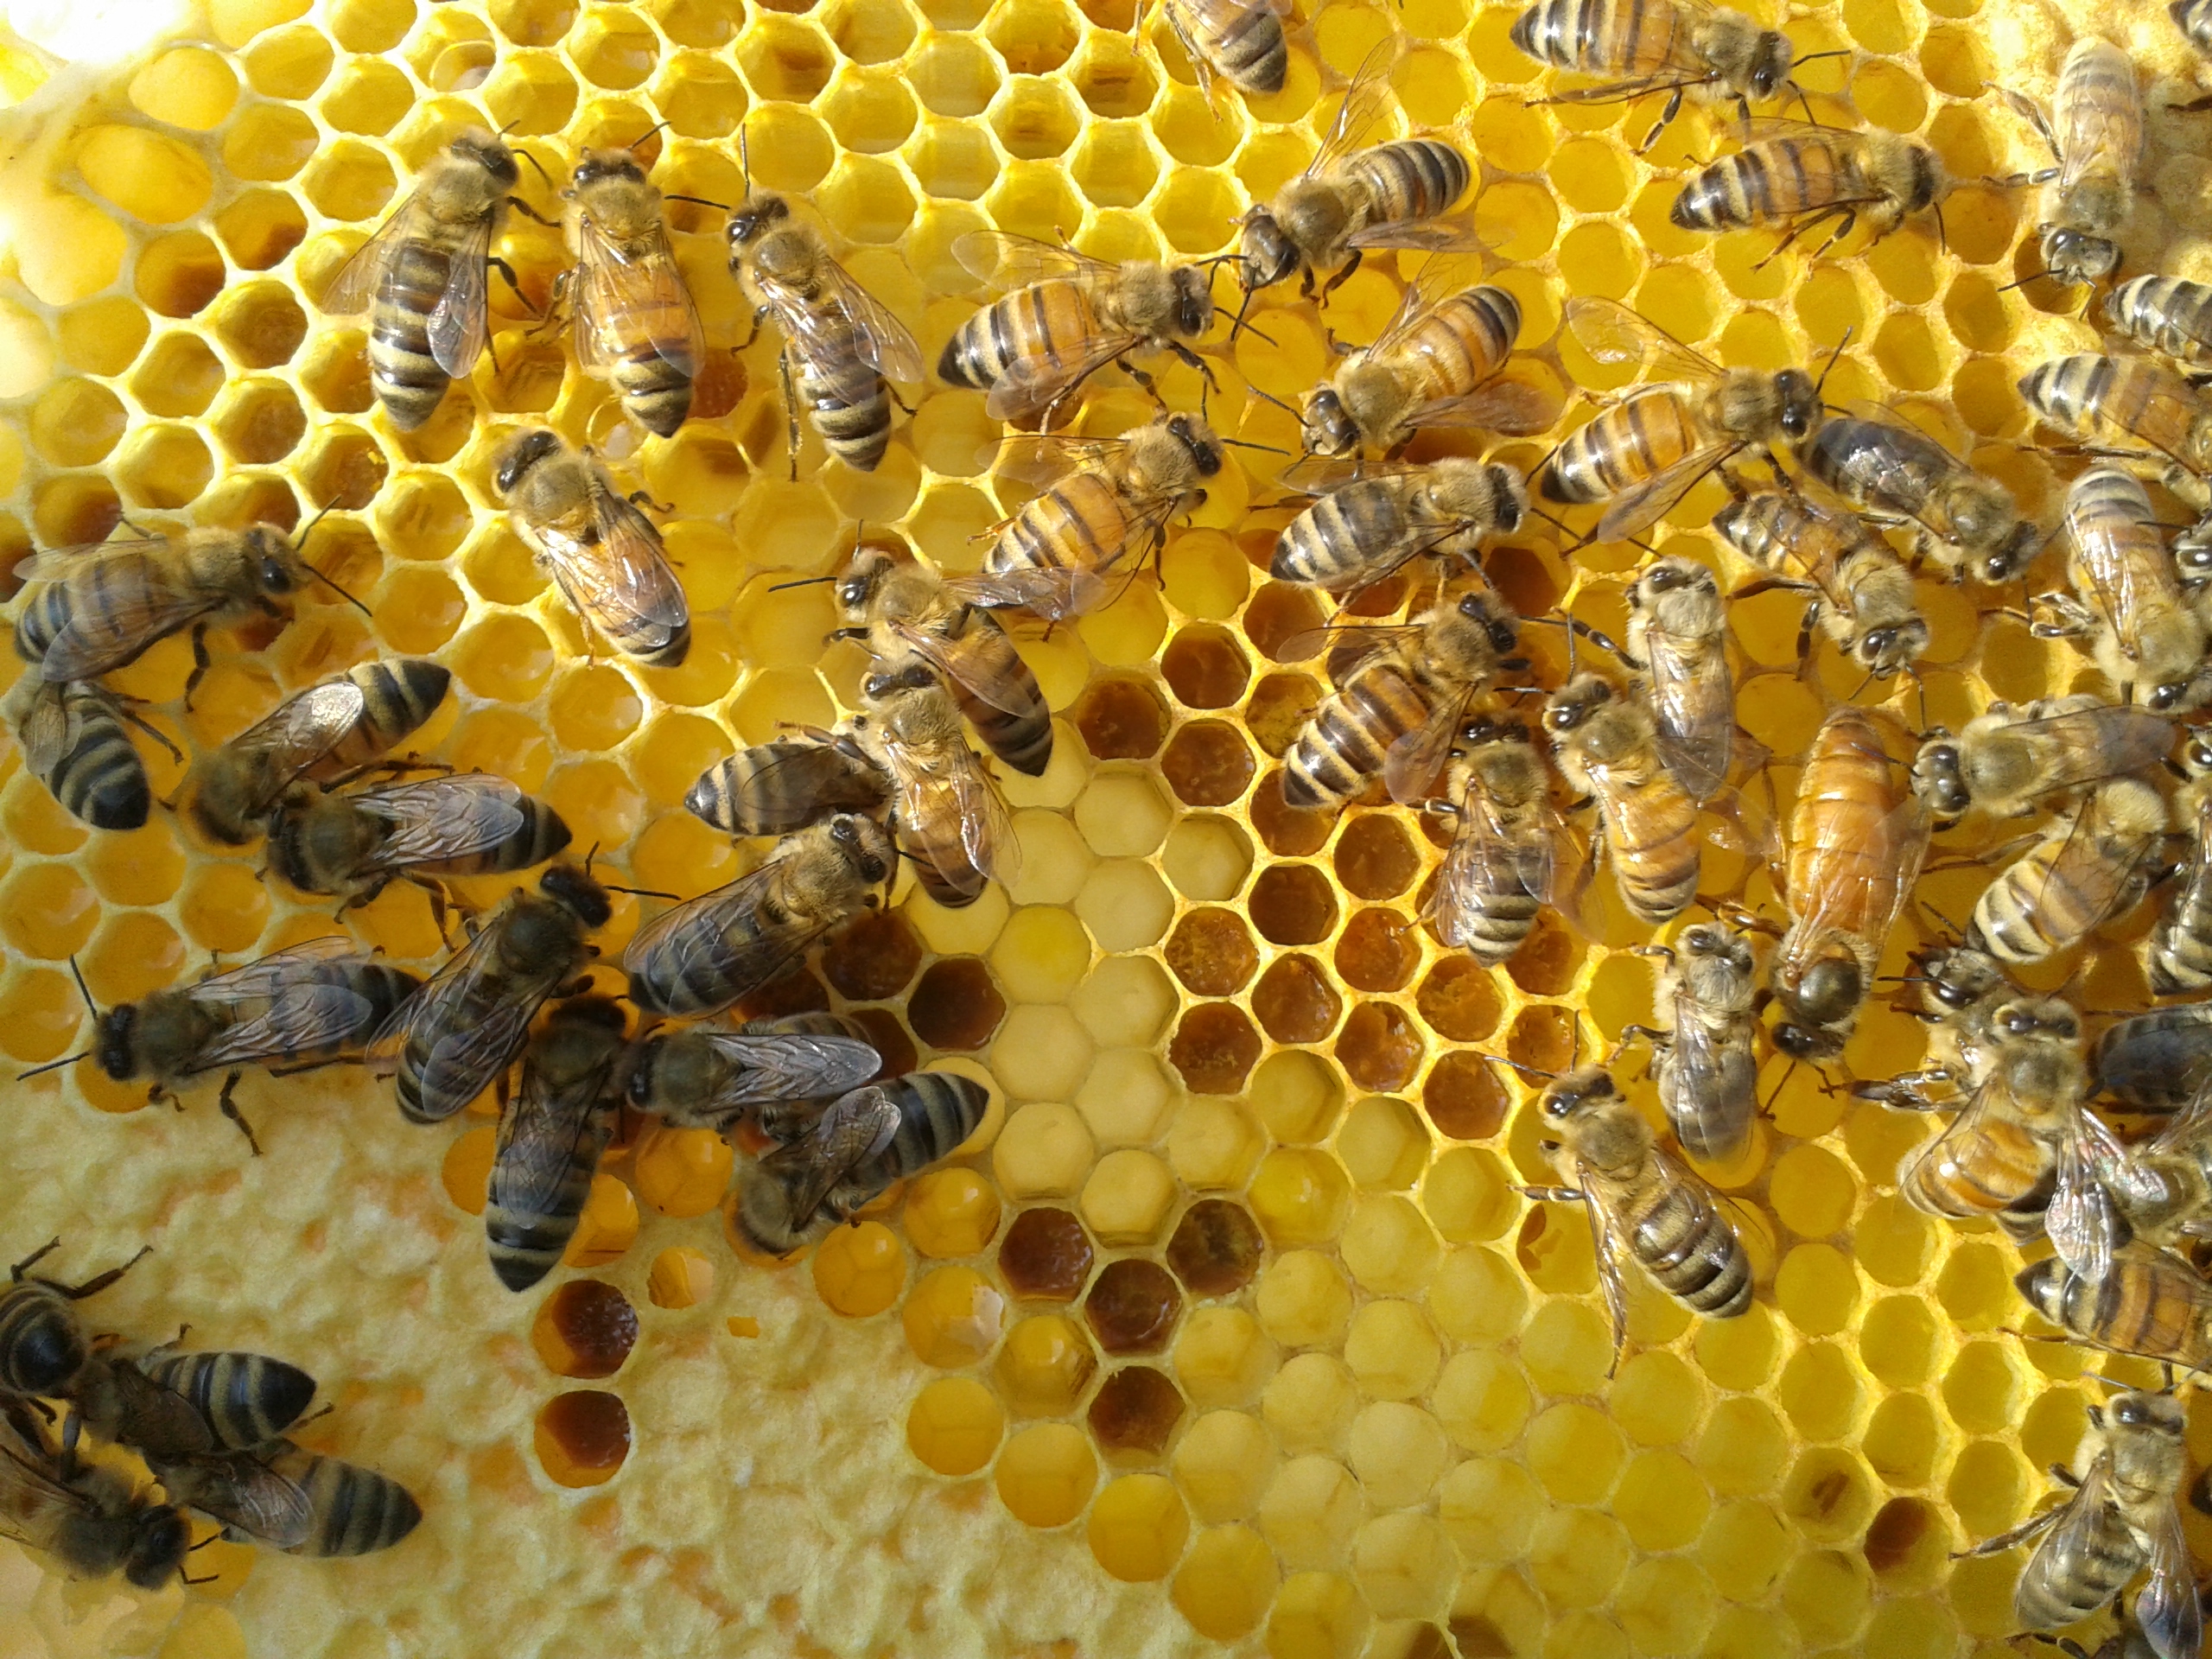 Lire la suite à propos de l’article Les abeilles à miel : un monde fascinant